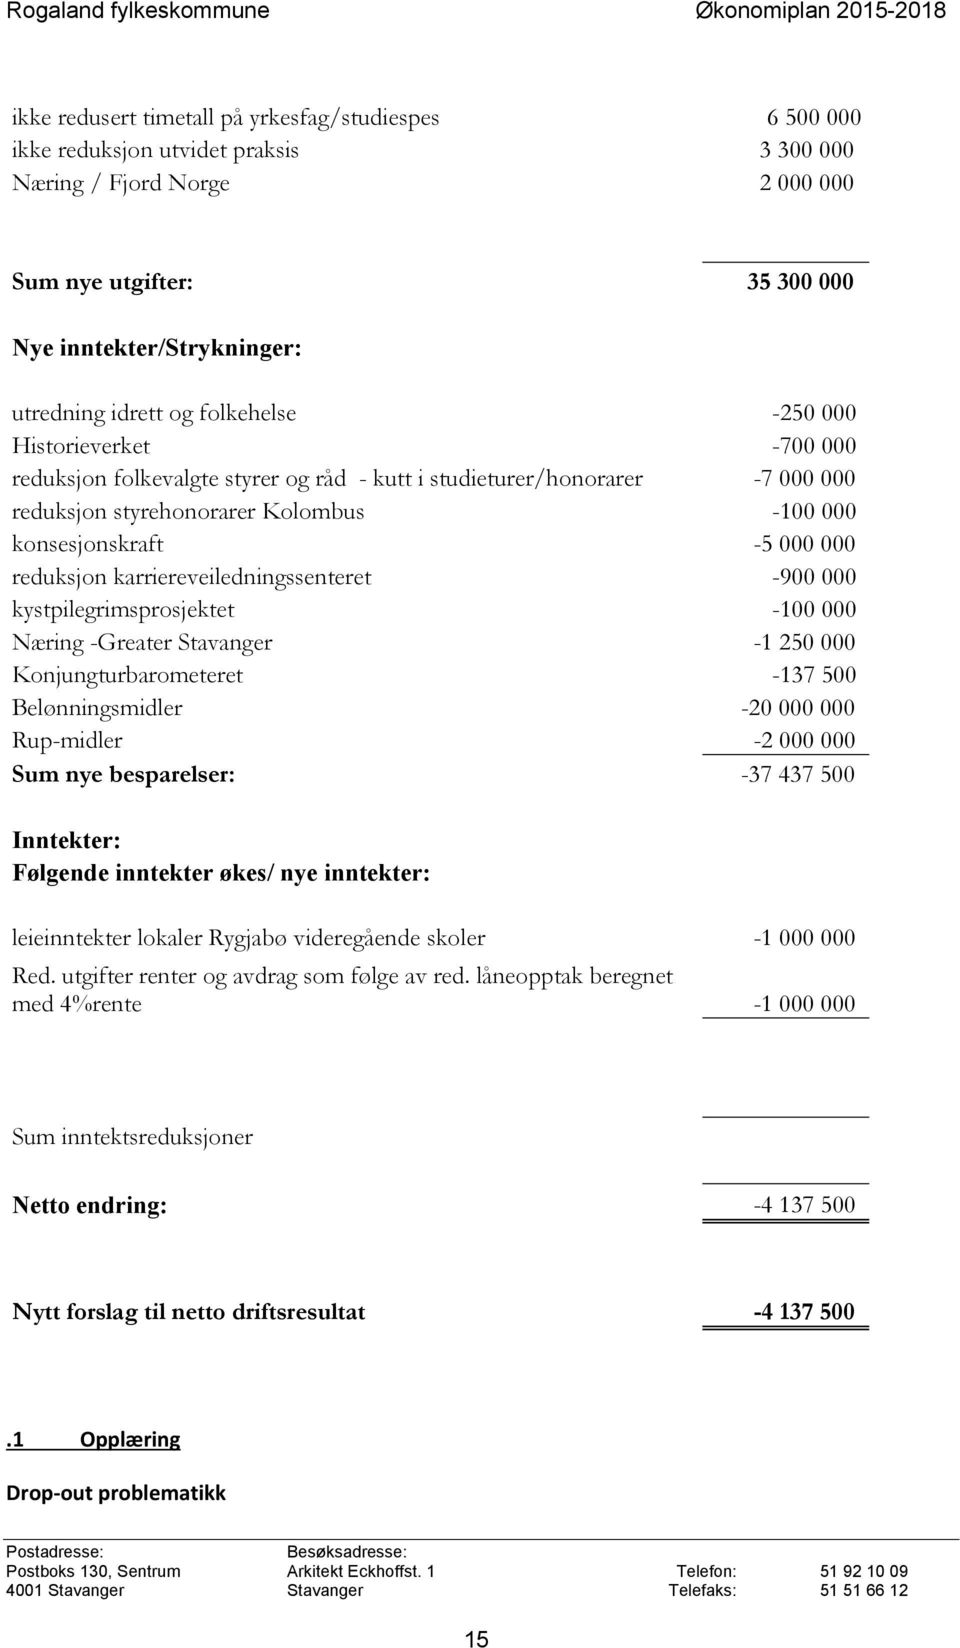 000 reduksjon karriereveiledningssenteret -900 000 kystpilegrimsprosjektet -100 000 Næring -Greater Stavanger -1 250 000 Konjungturbarometeret -137 500 Belønningsmidler -20 000 000 Rup-midler -2 000